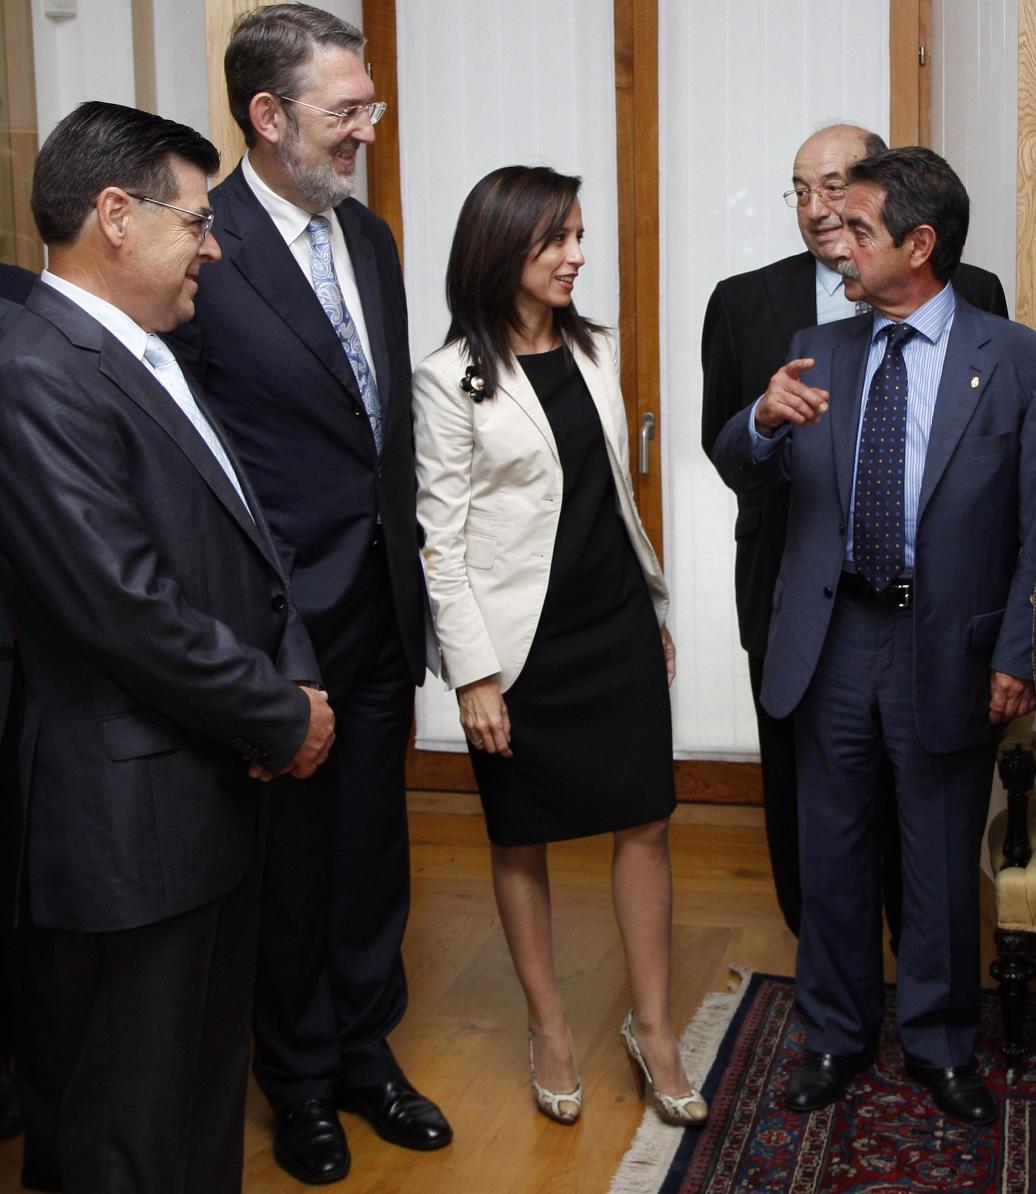 La ministra acompañada, de izquierda a derecha, del presidente de Caja Cantabria, delegado del Gobierno y presidente de Cantabria